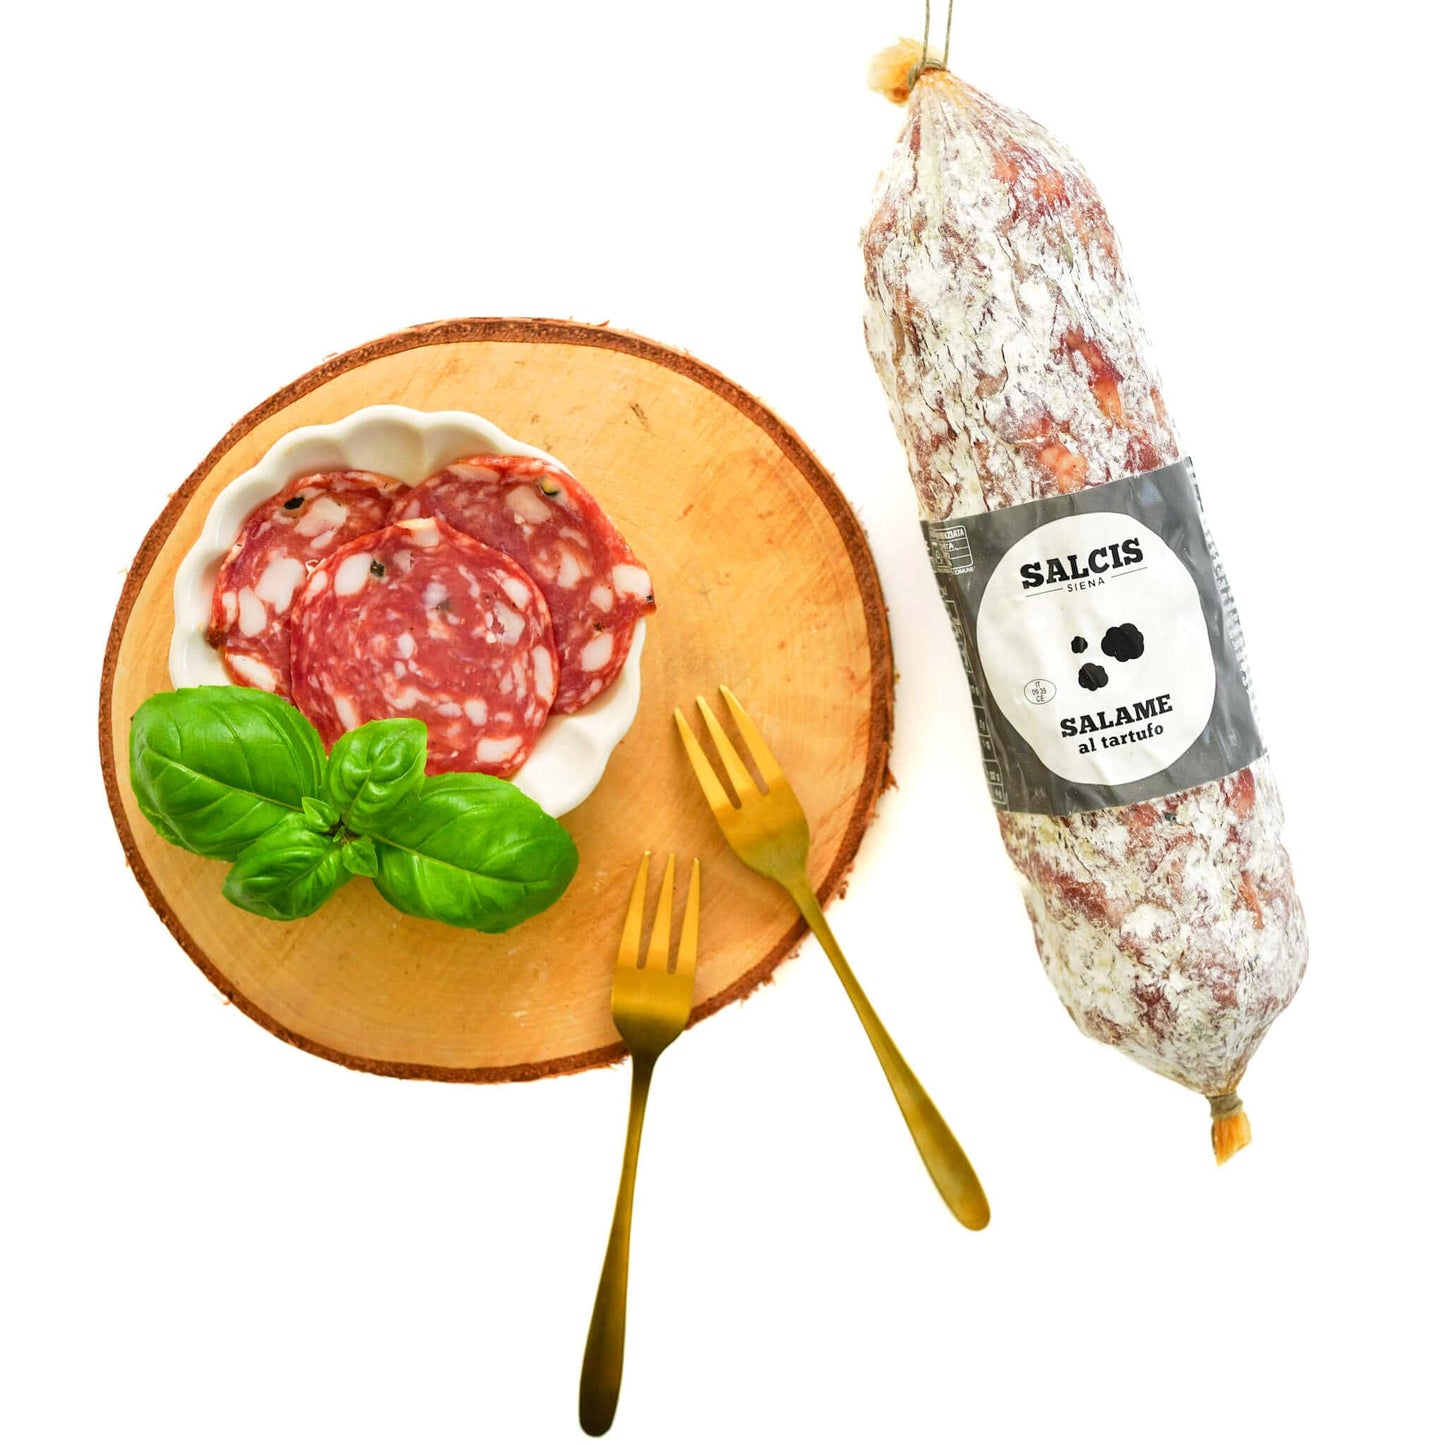 Trüffelsalami; Salami mit Trüffel; Italienische Salami